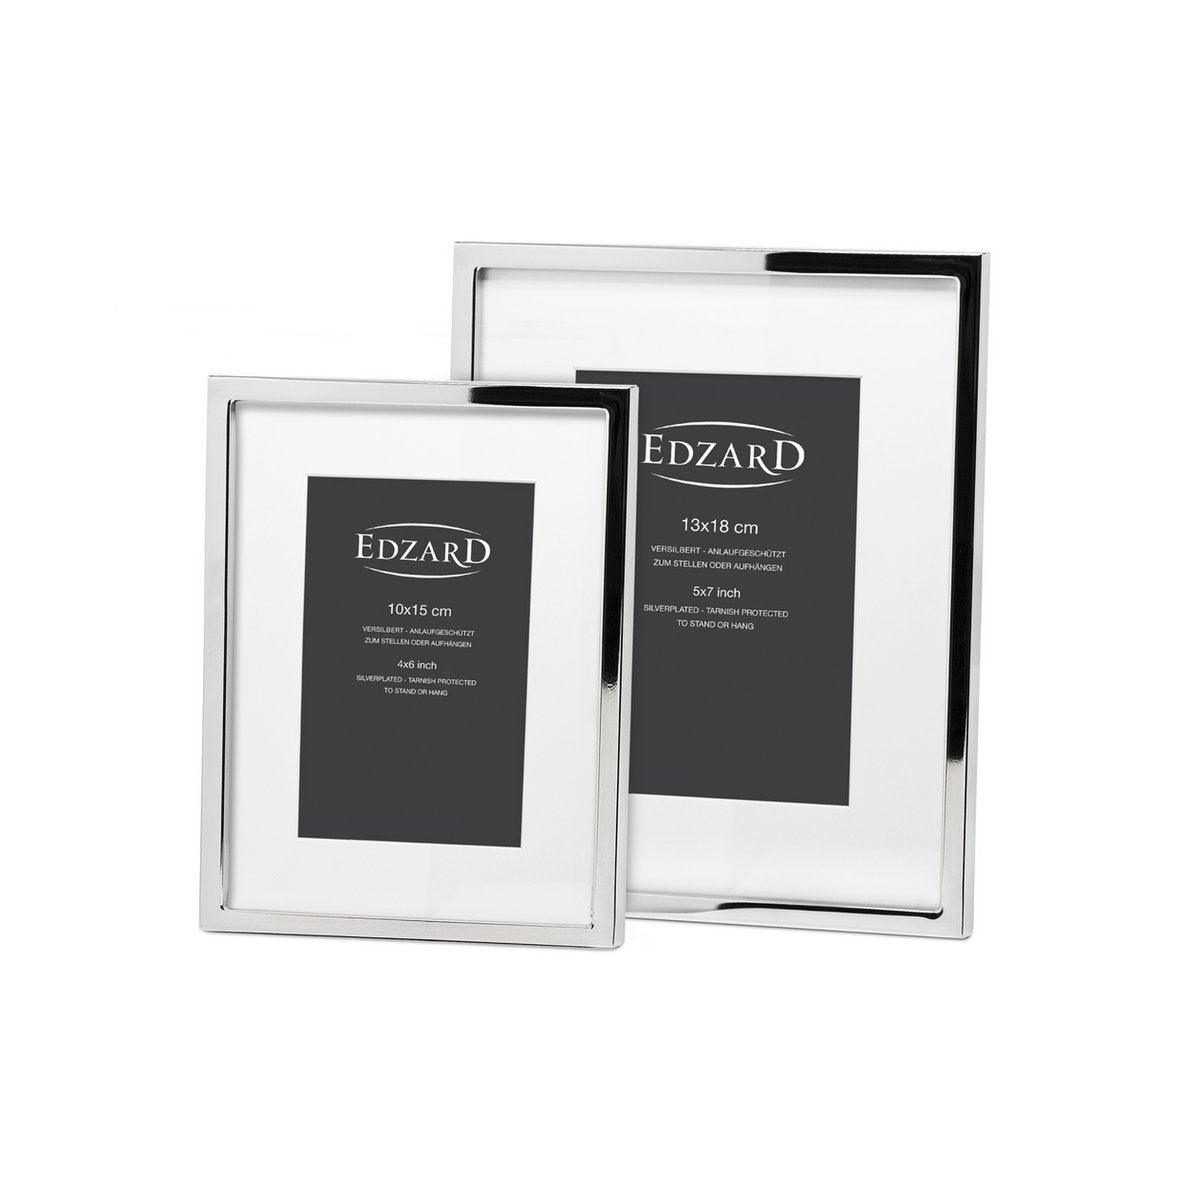 EDZARD Fotorahmen Rivoli für Foto 13 x 18 cm, edel versilbert, anlaufgeschützt, mit 2 Aufhängern - HomeDesign Knaus